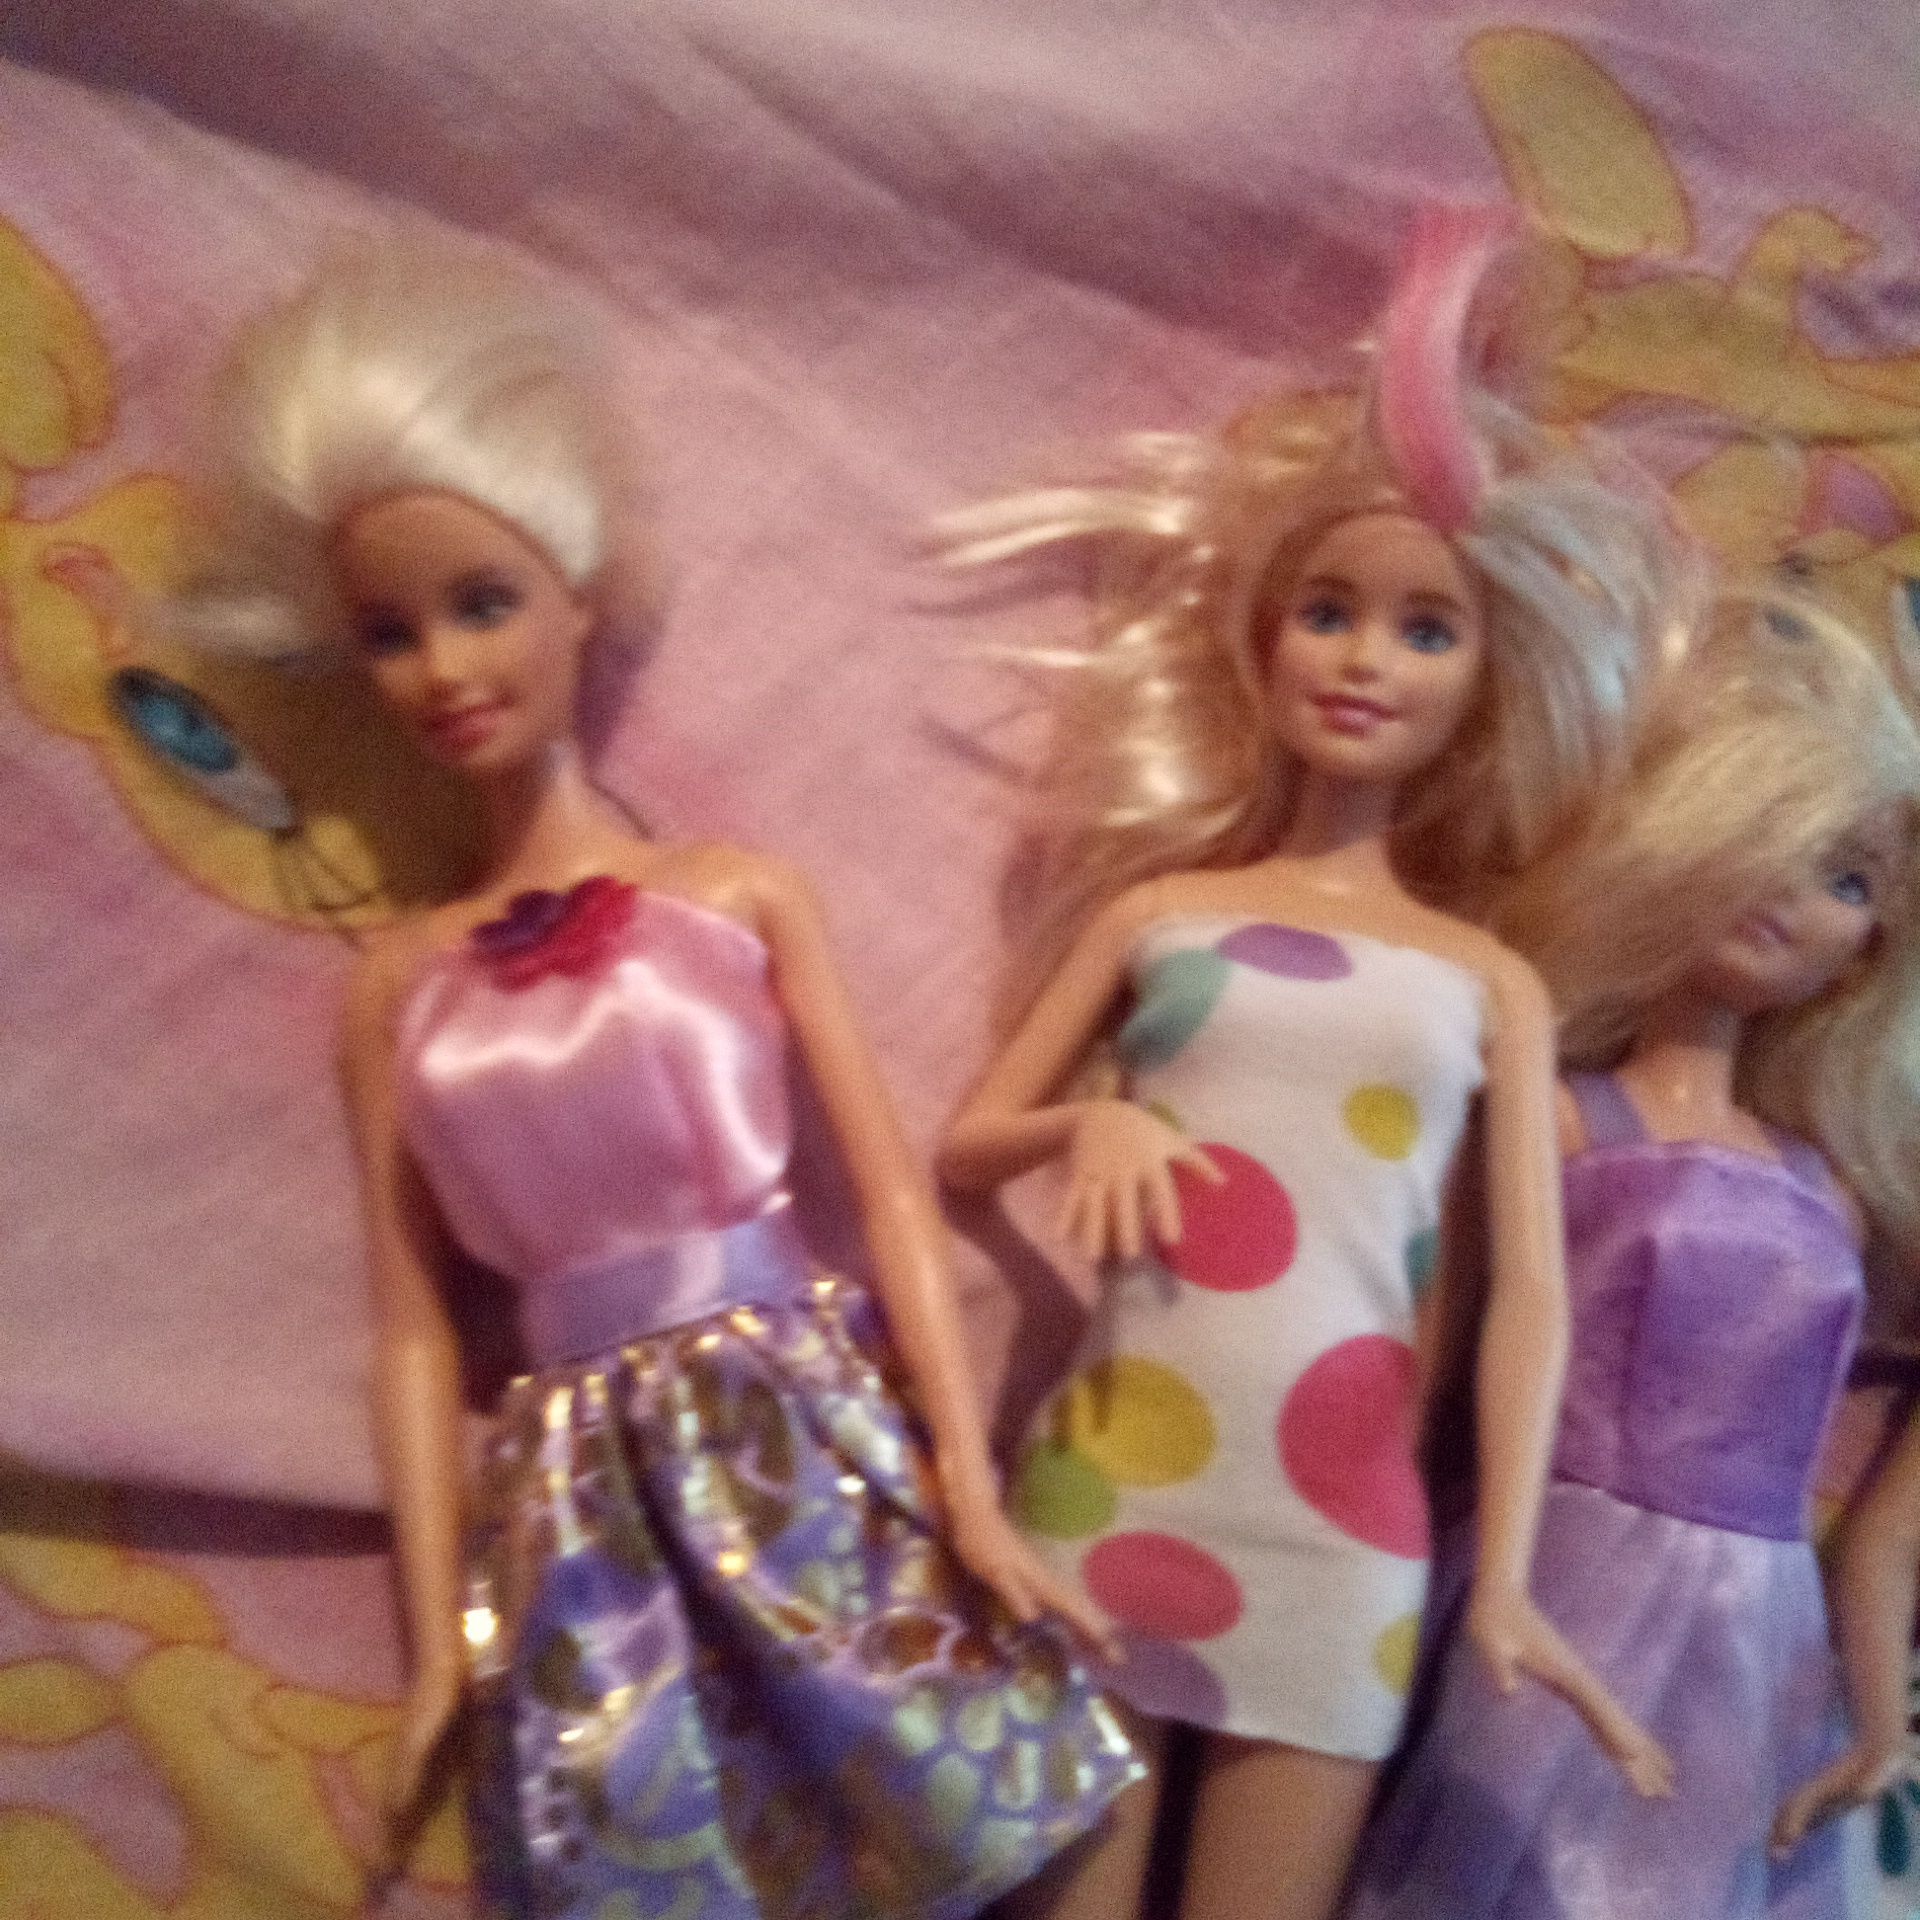 Păpuși Barbie Lot ,100lei lotul